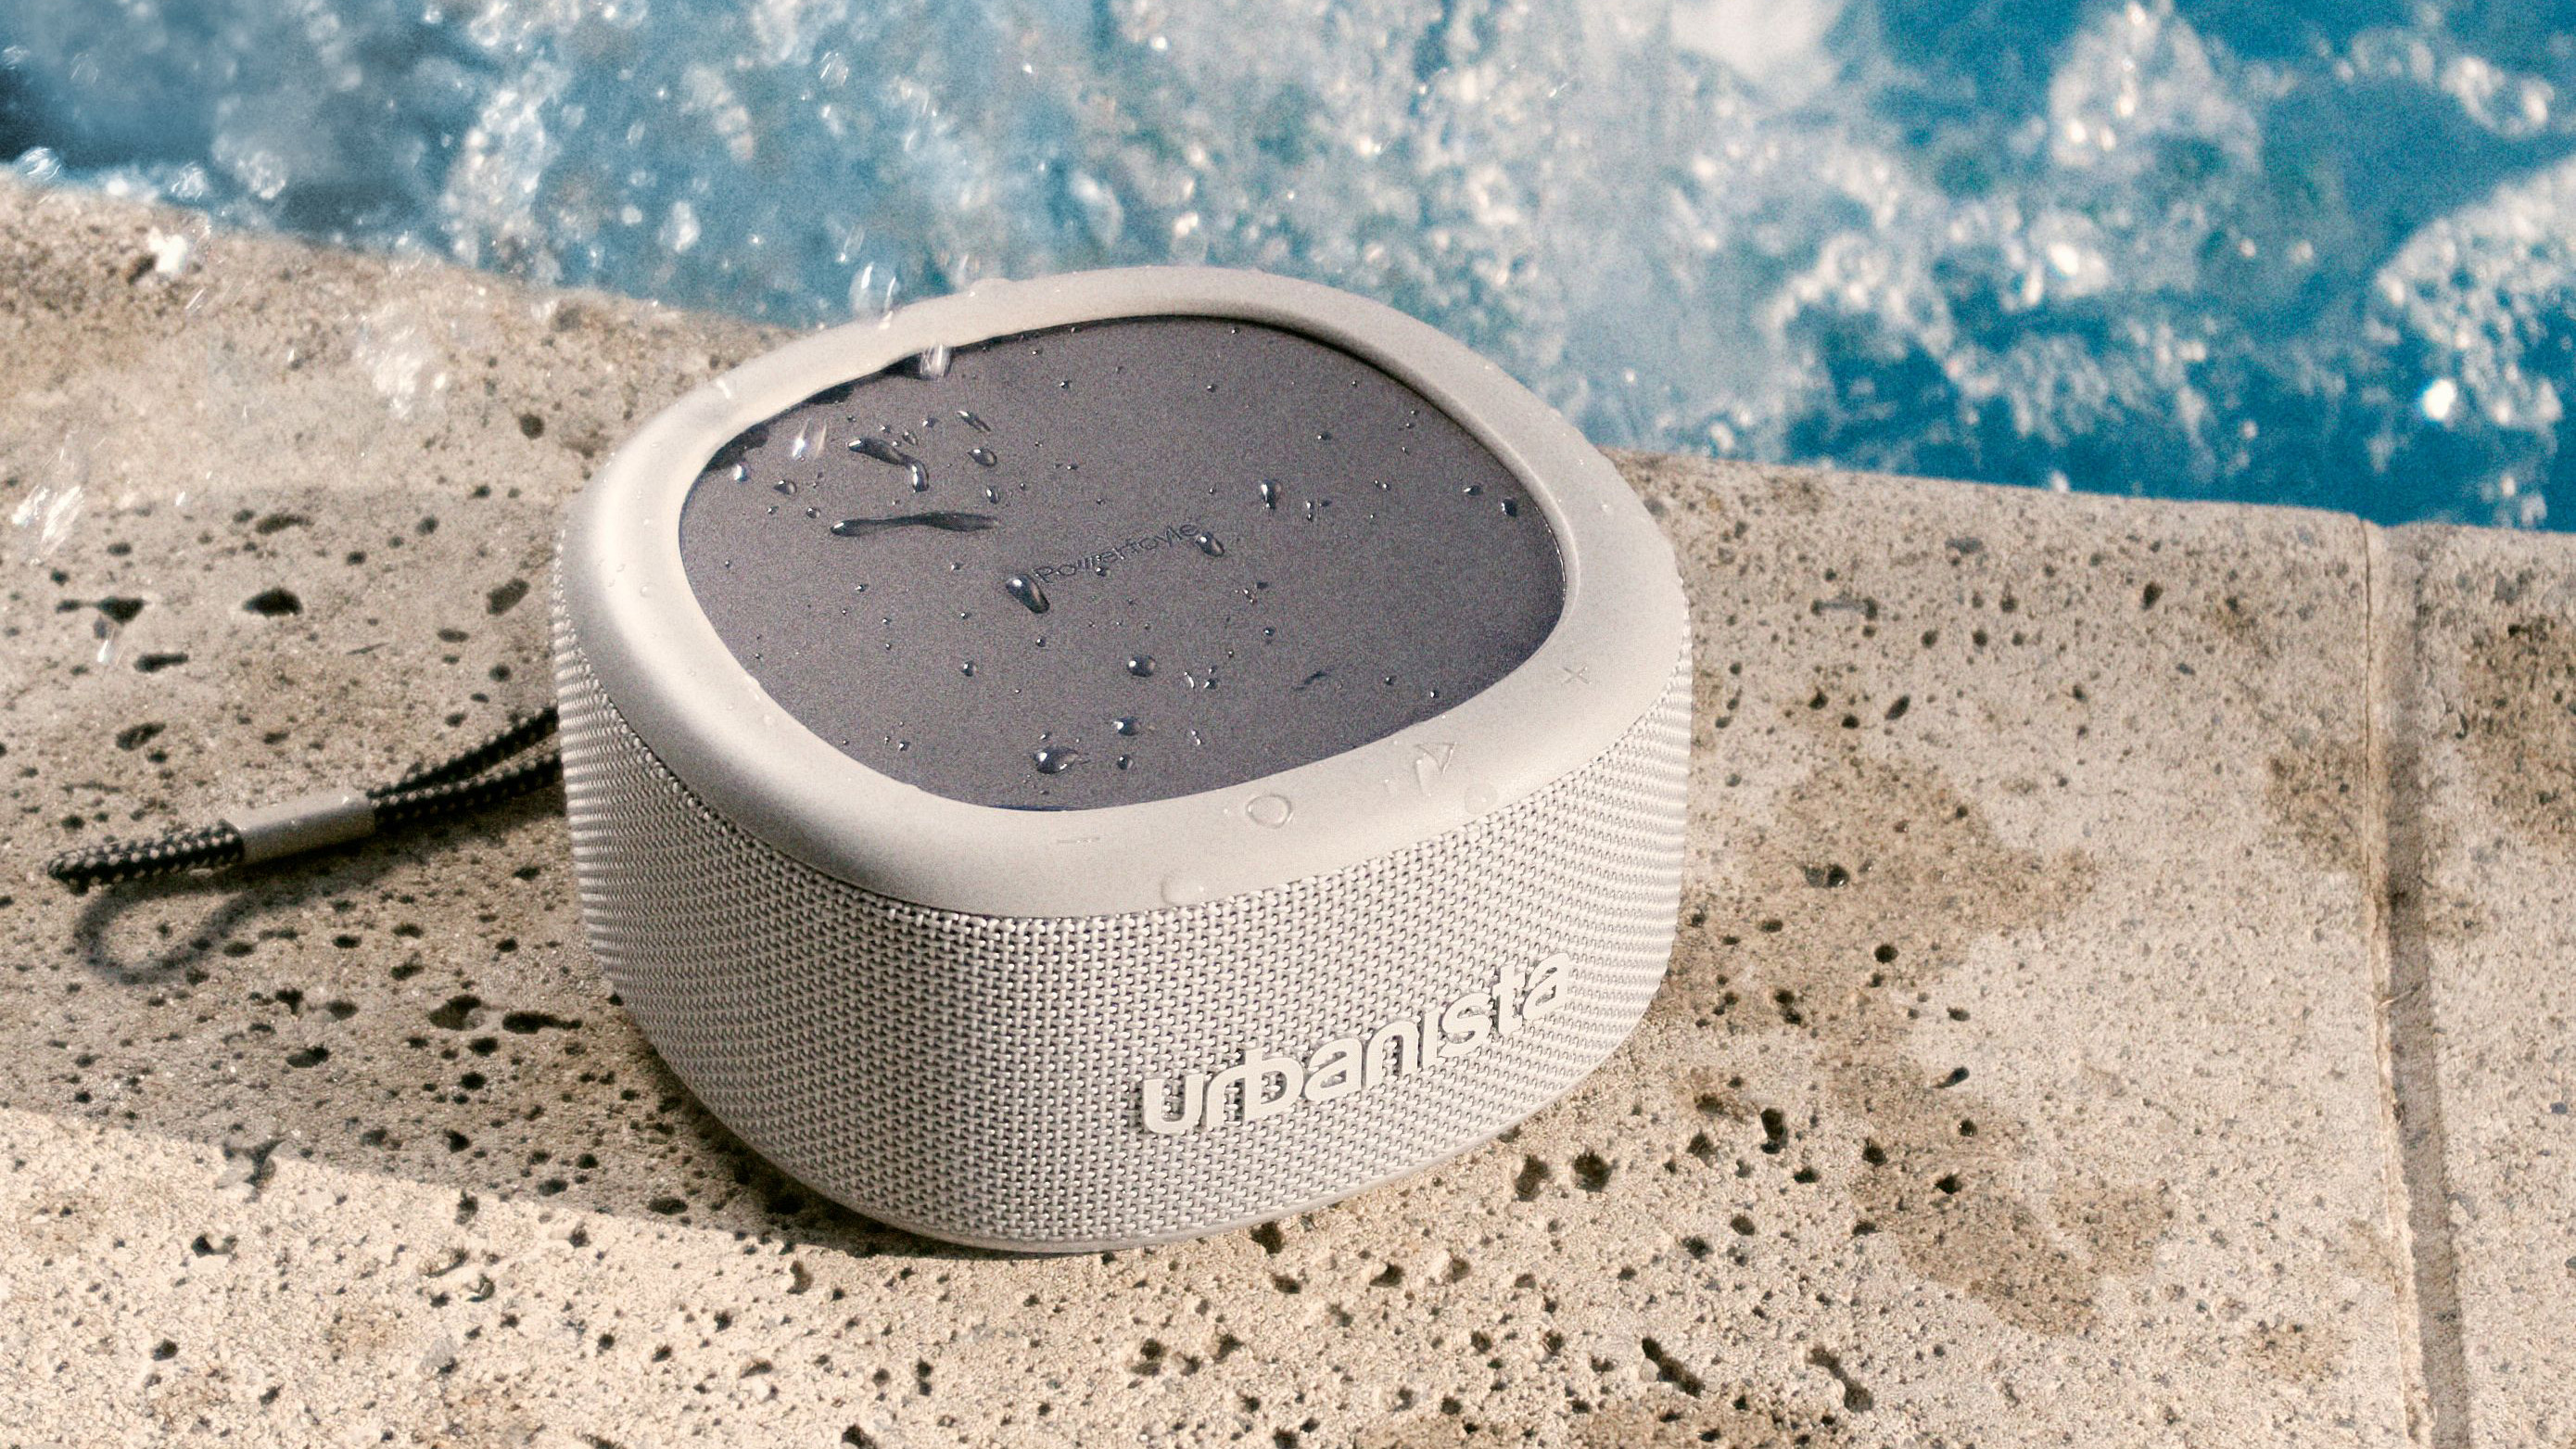 Malibu от Urbanista — это новая Bluetooth-колонка с самозарядкой, которая не останавливает музыку.